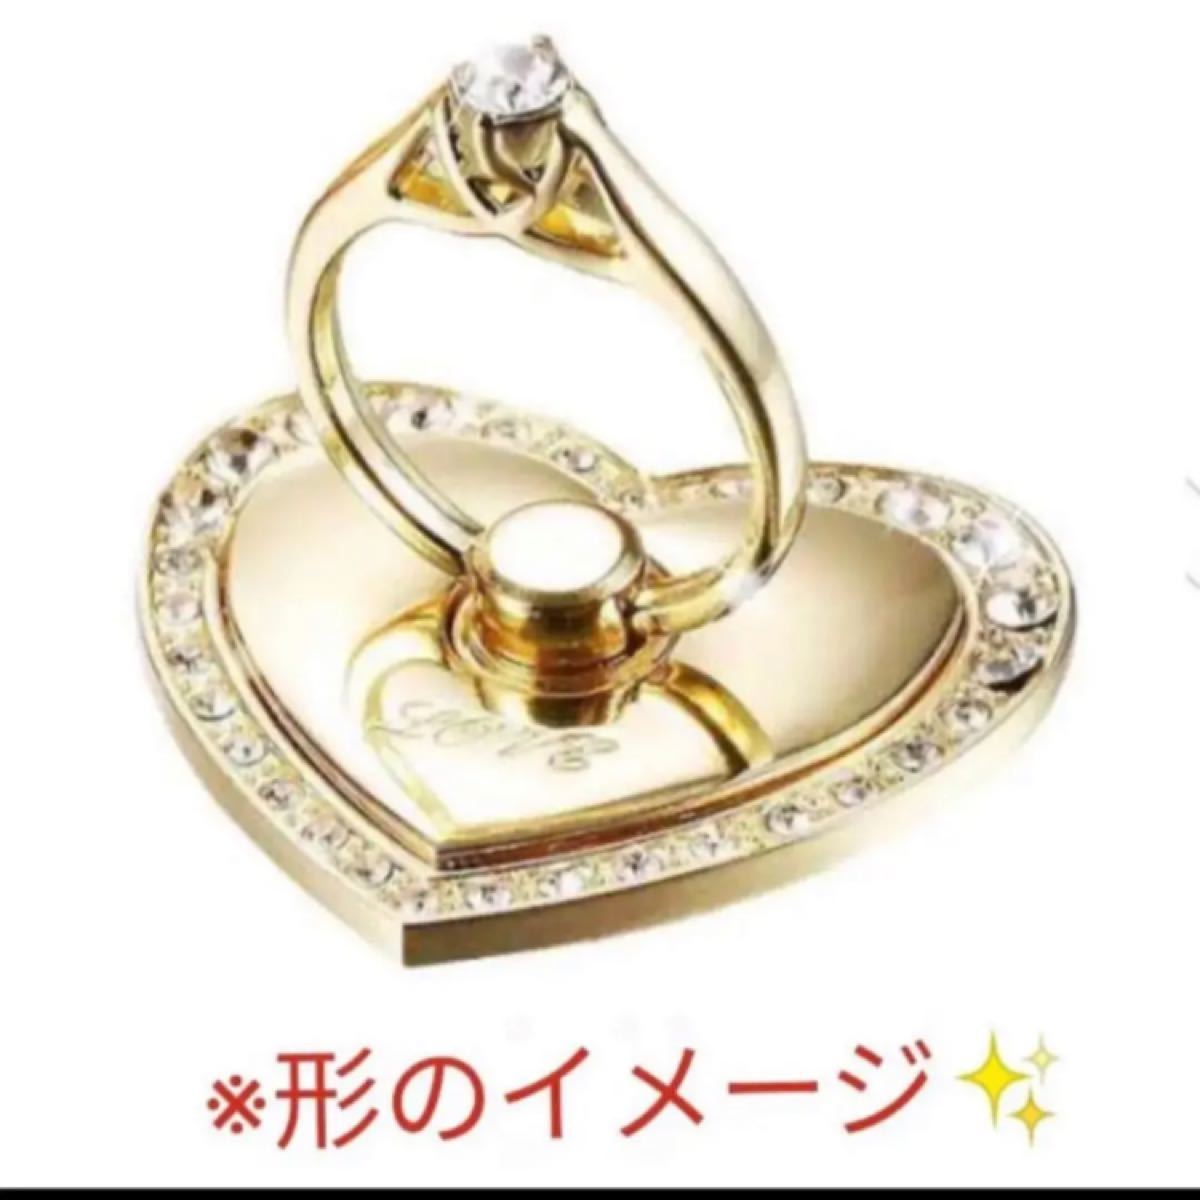 ★★大人気(^^♪☆指輪型☆ハートバンカーリング☆スマホリング☆ハート型ゴールド